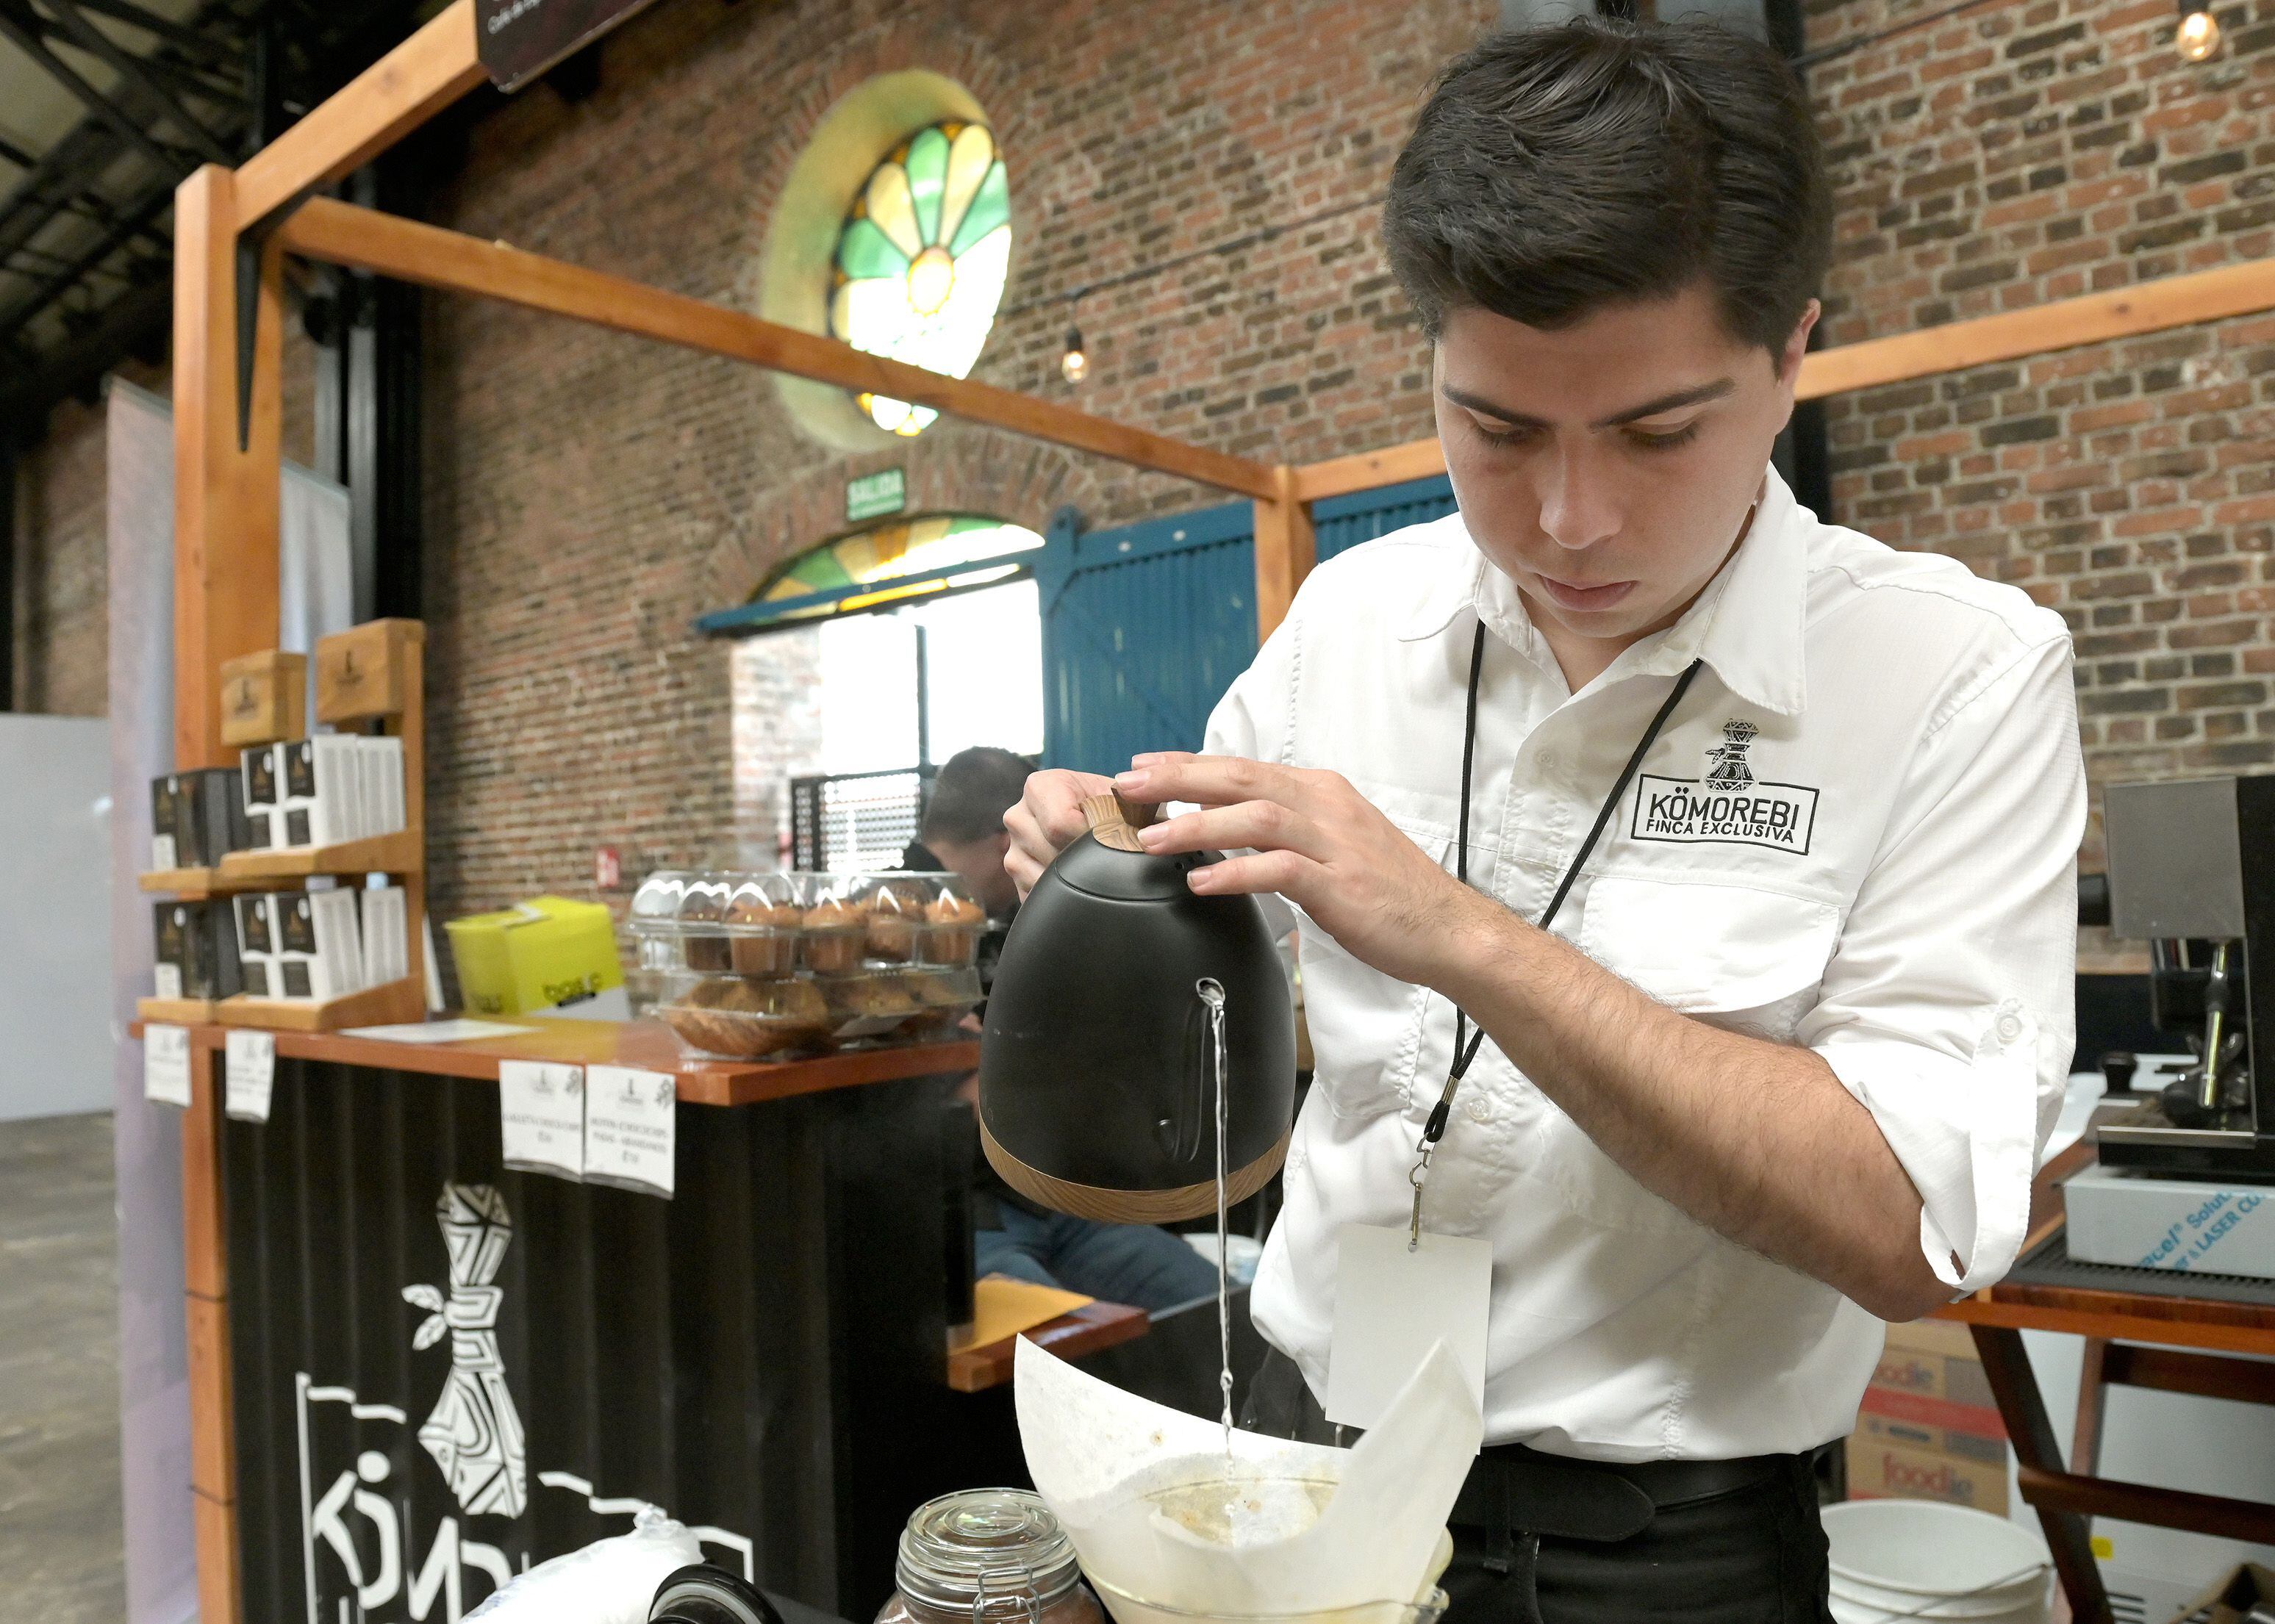 Daniel Zúñiga, de 24 años, es propietario de la marca de café de especialidad Kömorebi Finca Exclusiva, producido bajo certificación de Denominación de Origen en la zona de Tarrazú. Foto: Albert Marín para La Nación.